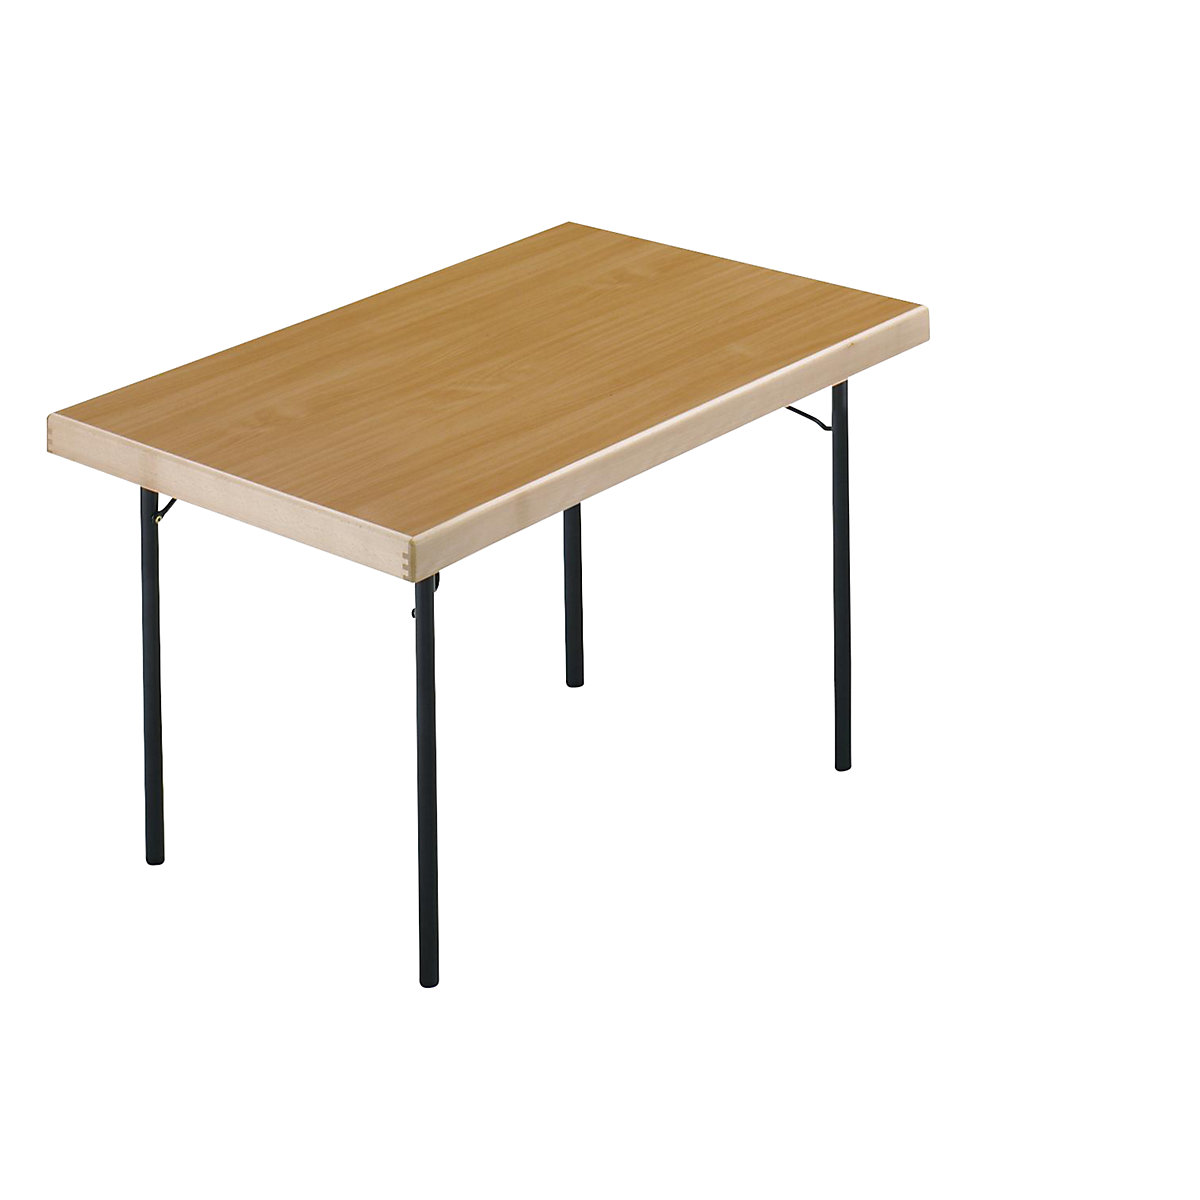 Sklápací stôl, podstavec so 4 nohami, 1200 x 800 mm, podstavec antracitová, doska vzor buk-8